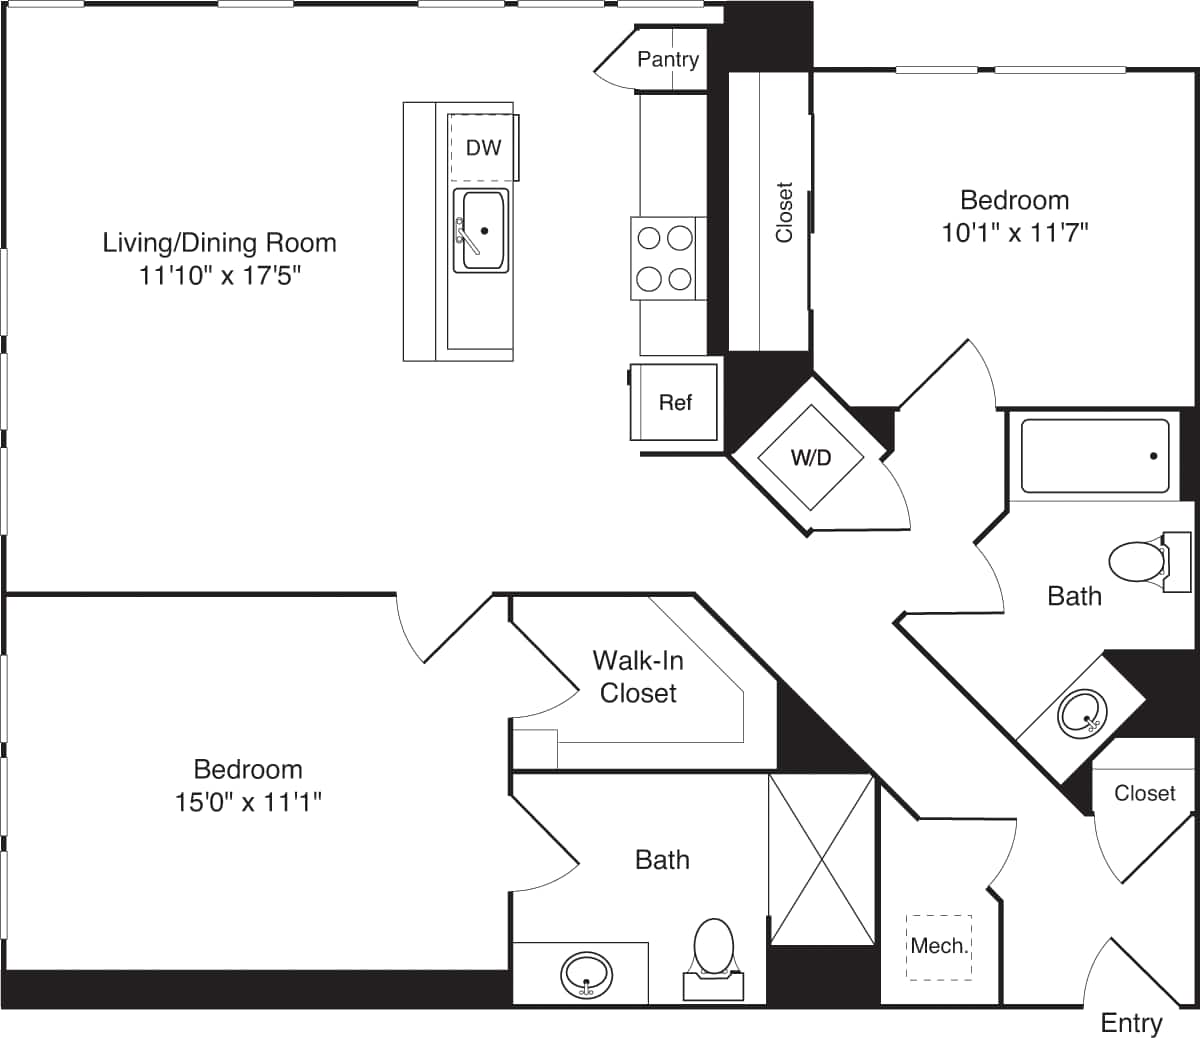 Floorplan diagram for C03a_NoBalcony, showing 2 bedroom